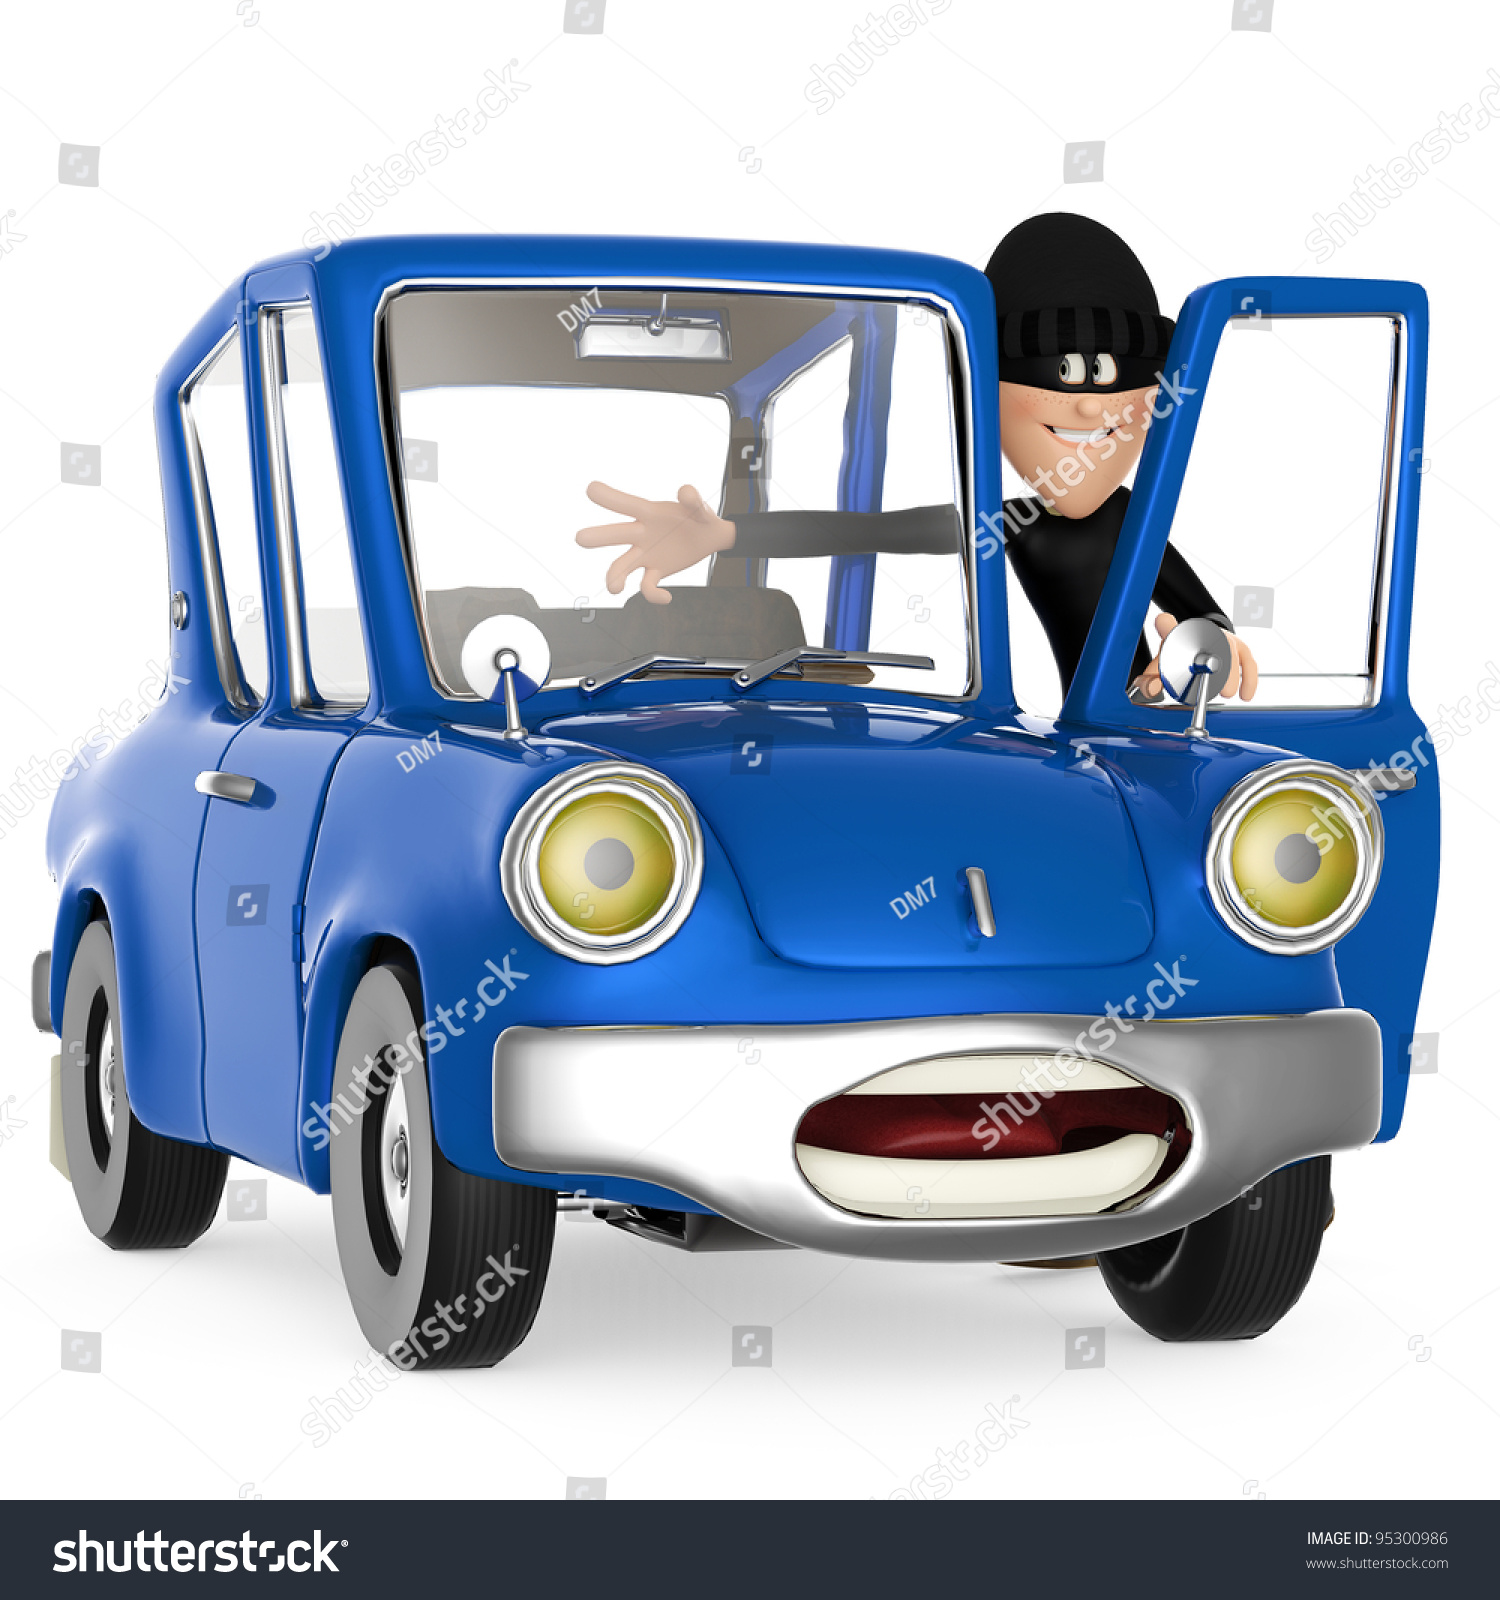 clipart car thief - photo #39